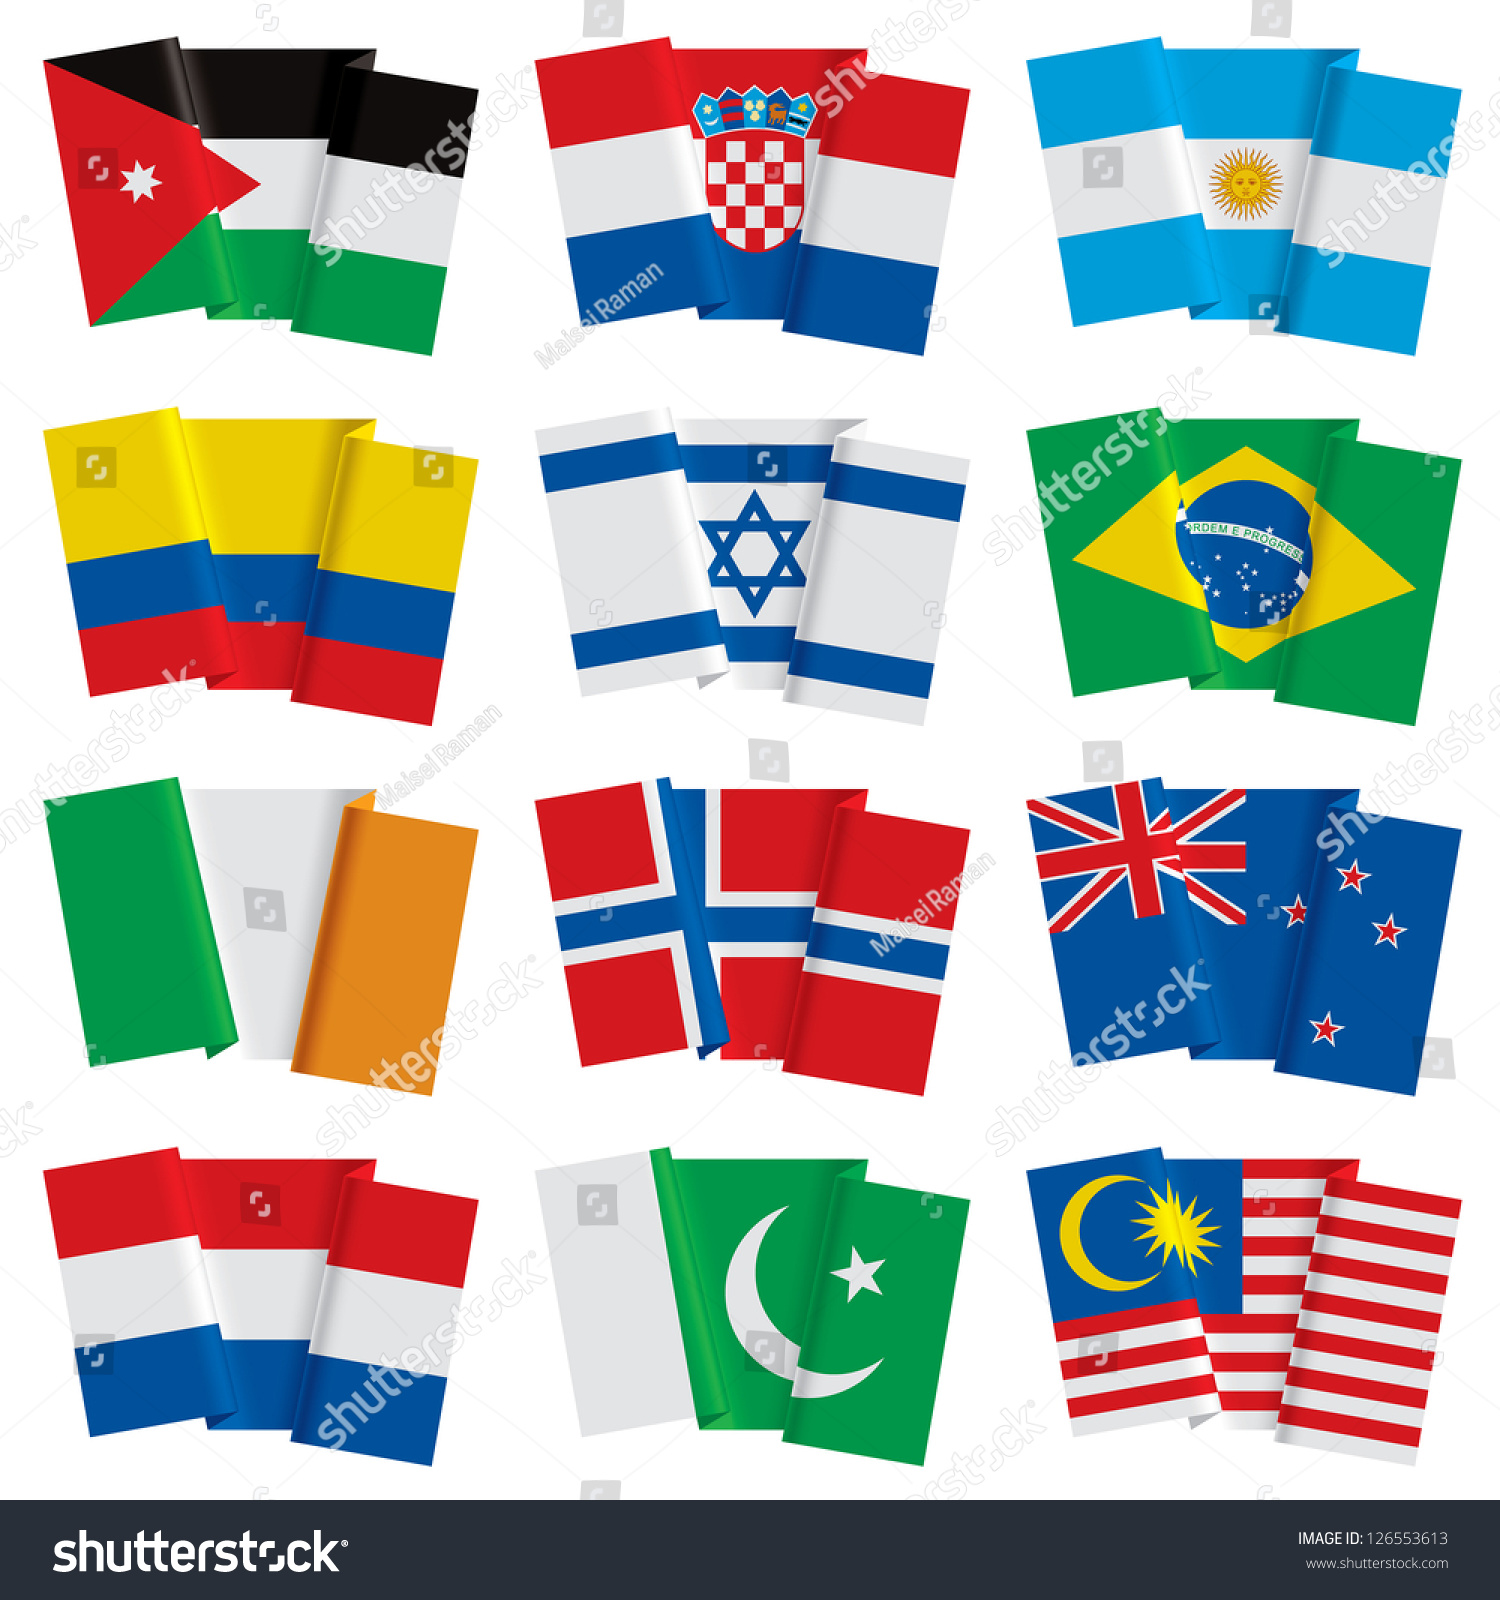 Vector Set Of World Flags - 126553613 : Shutterstock